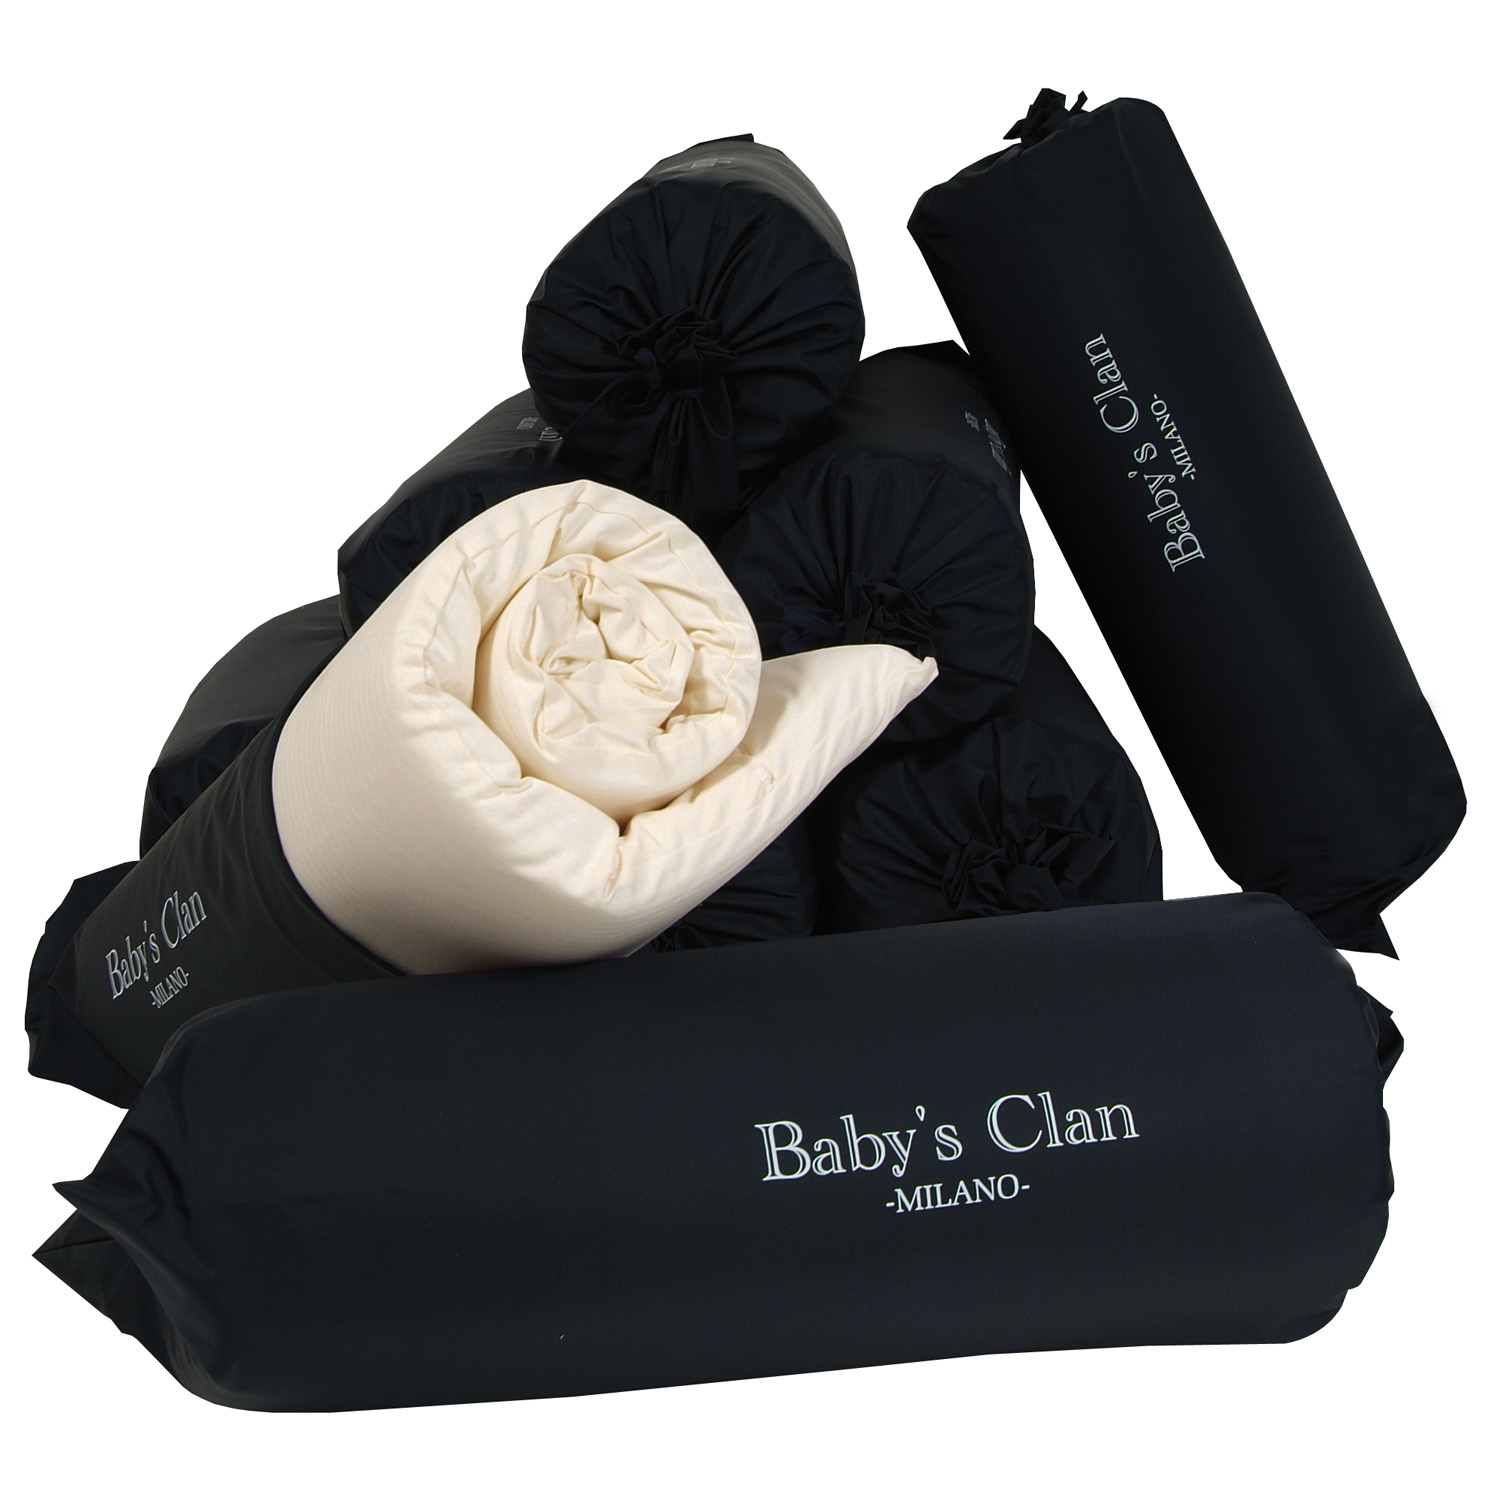 Materassino da campeggio avvolgibile – Baby's Clan • Real Baby